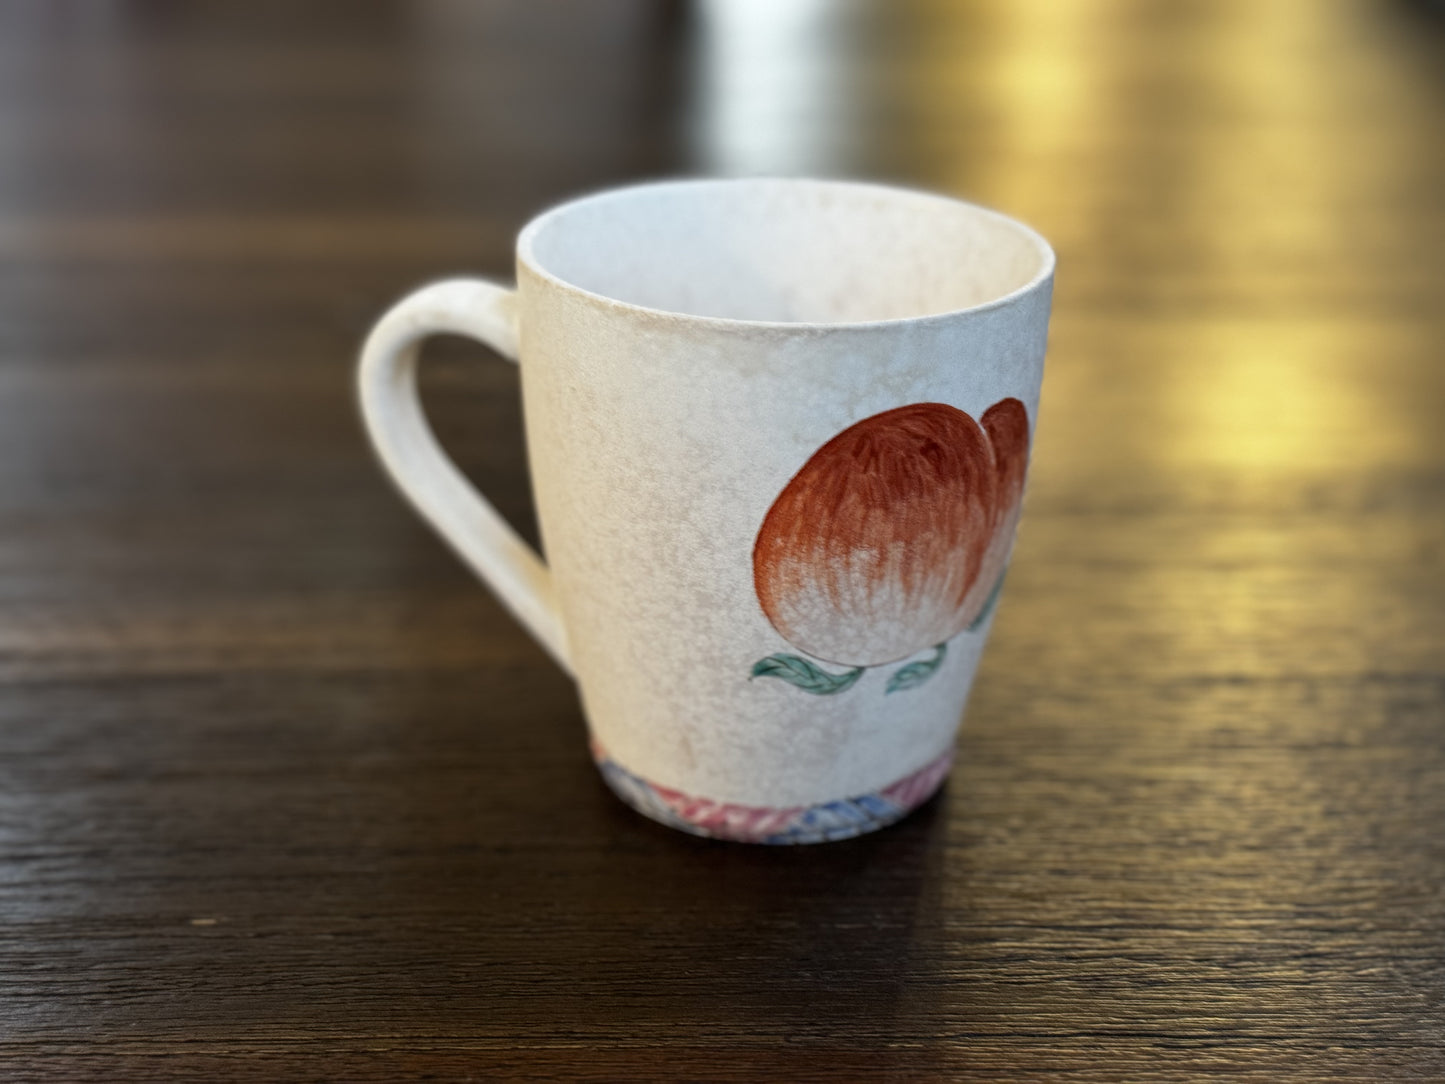 "桃然自得""樱有尽有" Handcrafted harvest mug by Jianshibai